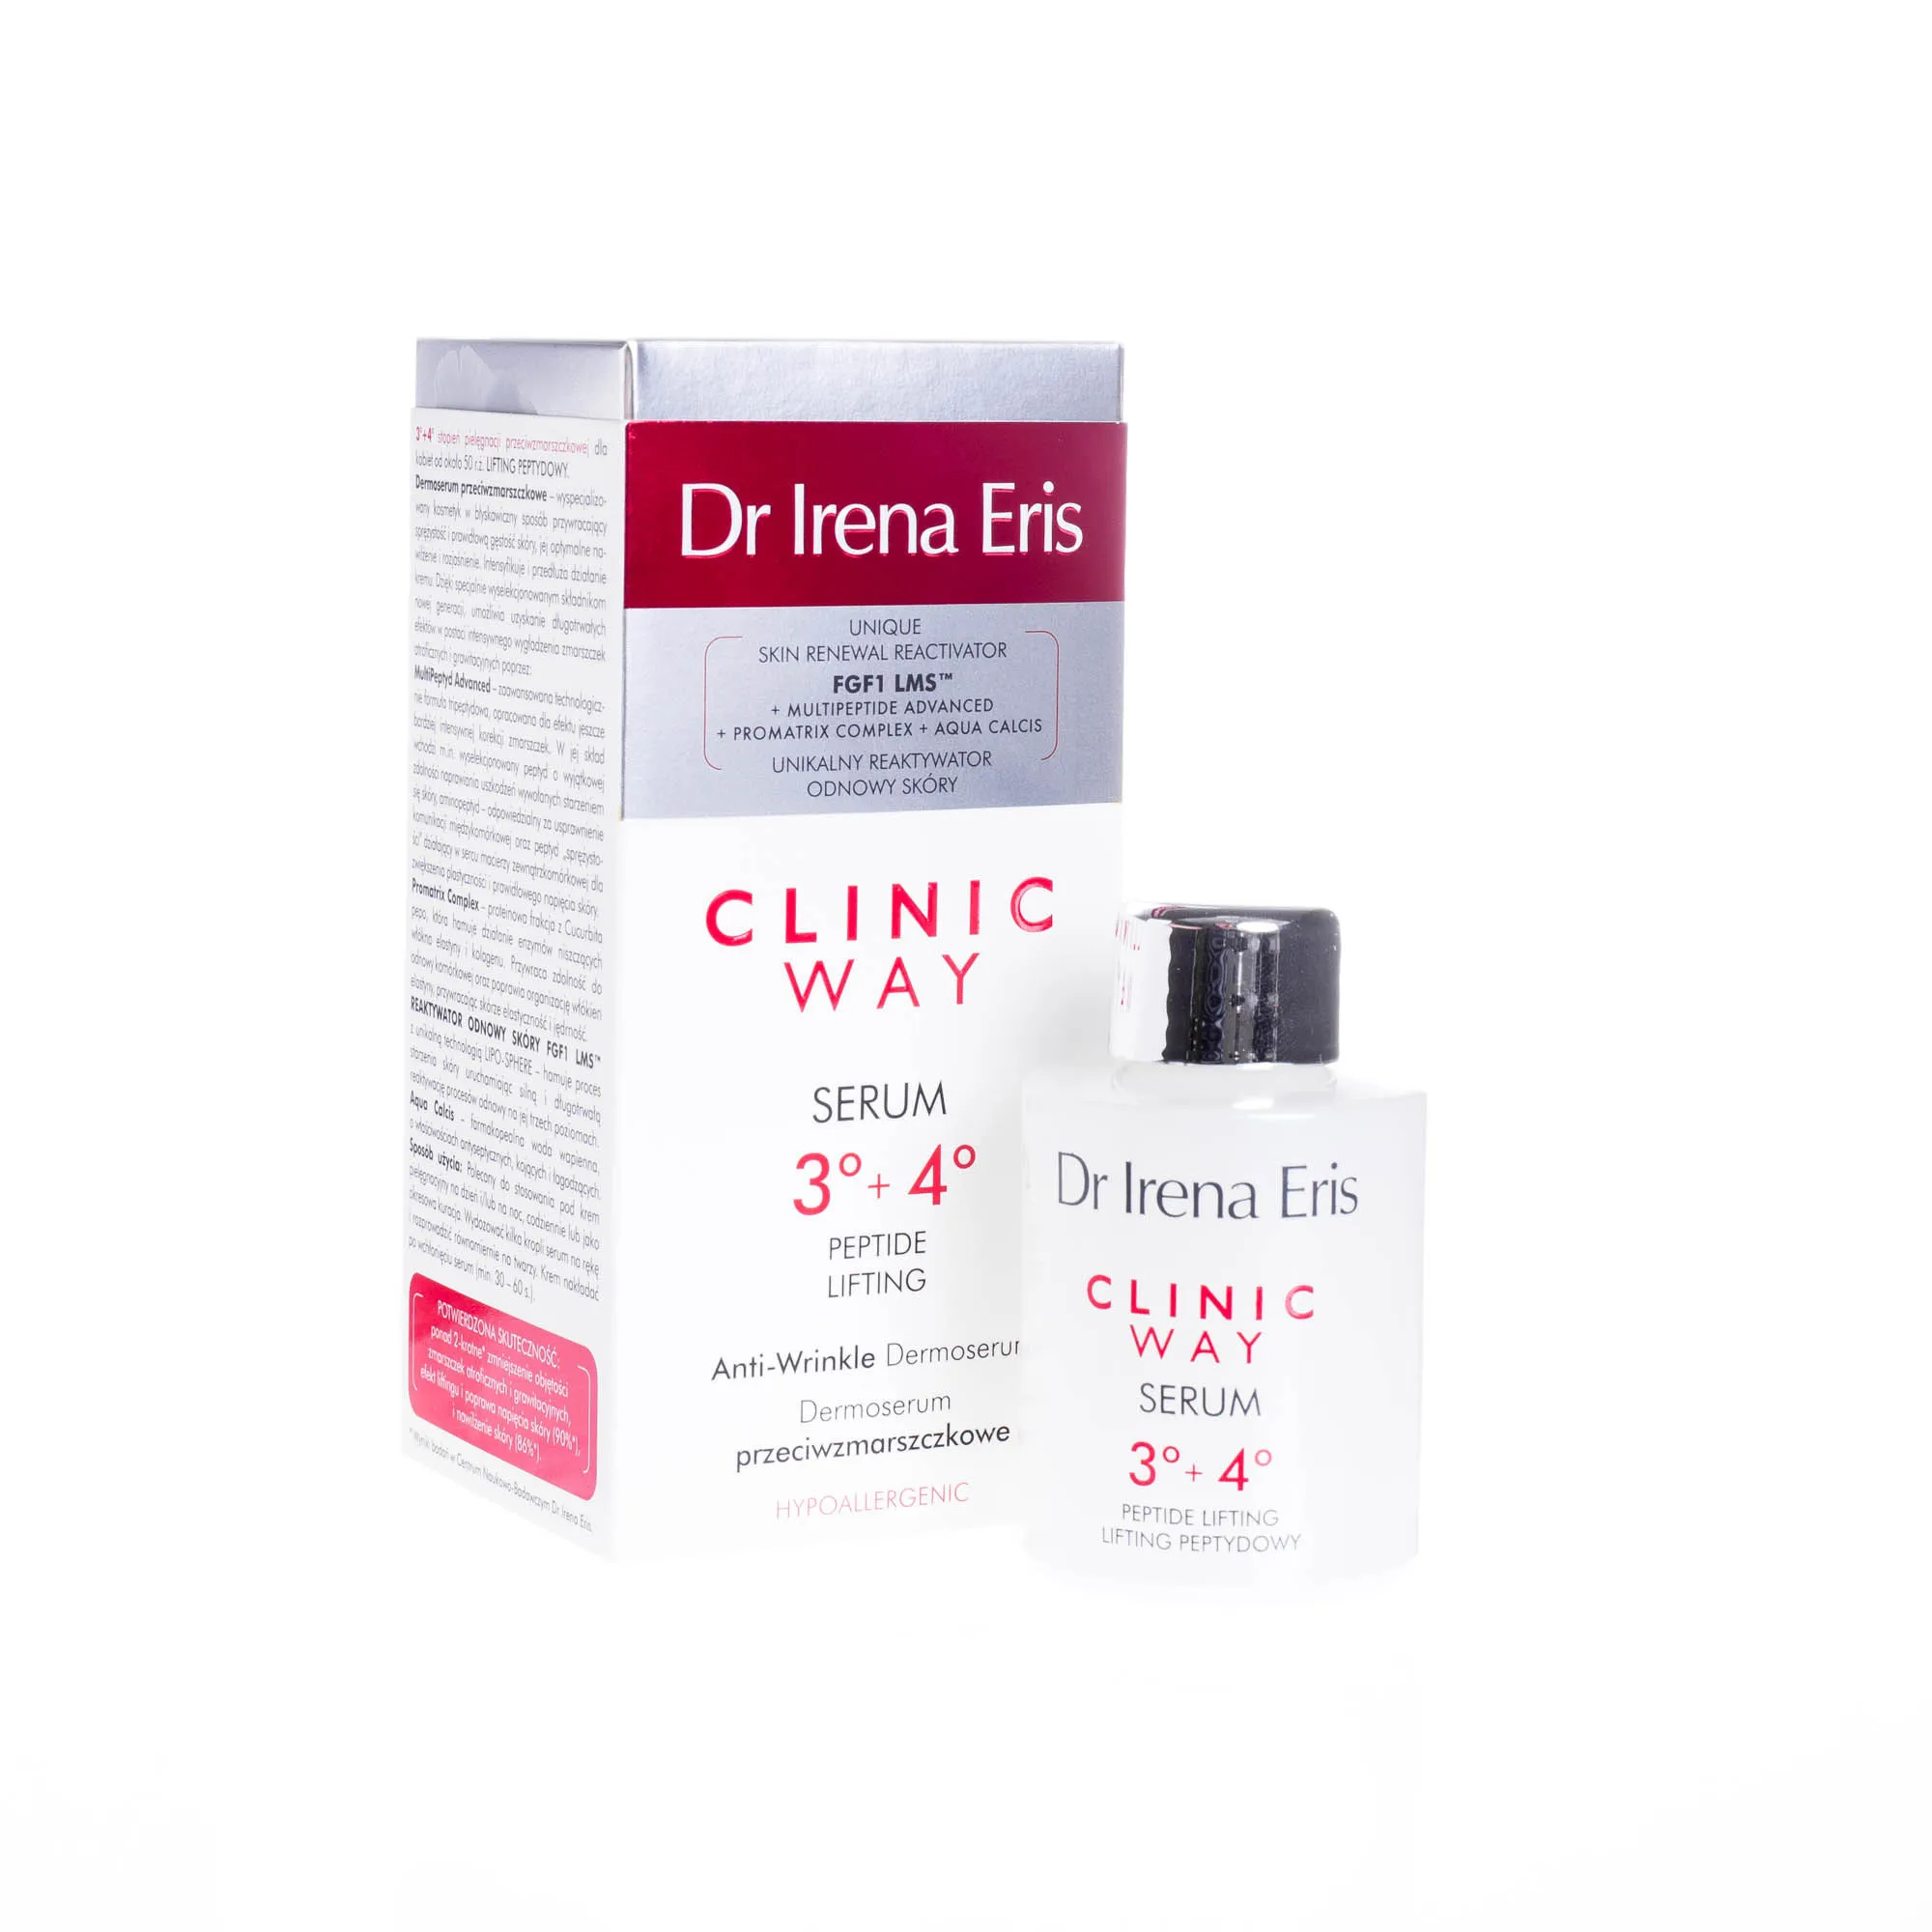 Dr Irena Eris Clinic Way Lifting pepdytowy, dermoserum przeciwzmarszczkowE stopień 3+4, 30 ml 